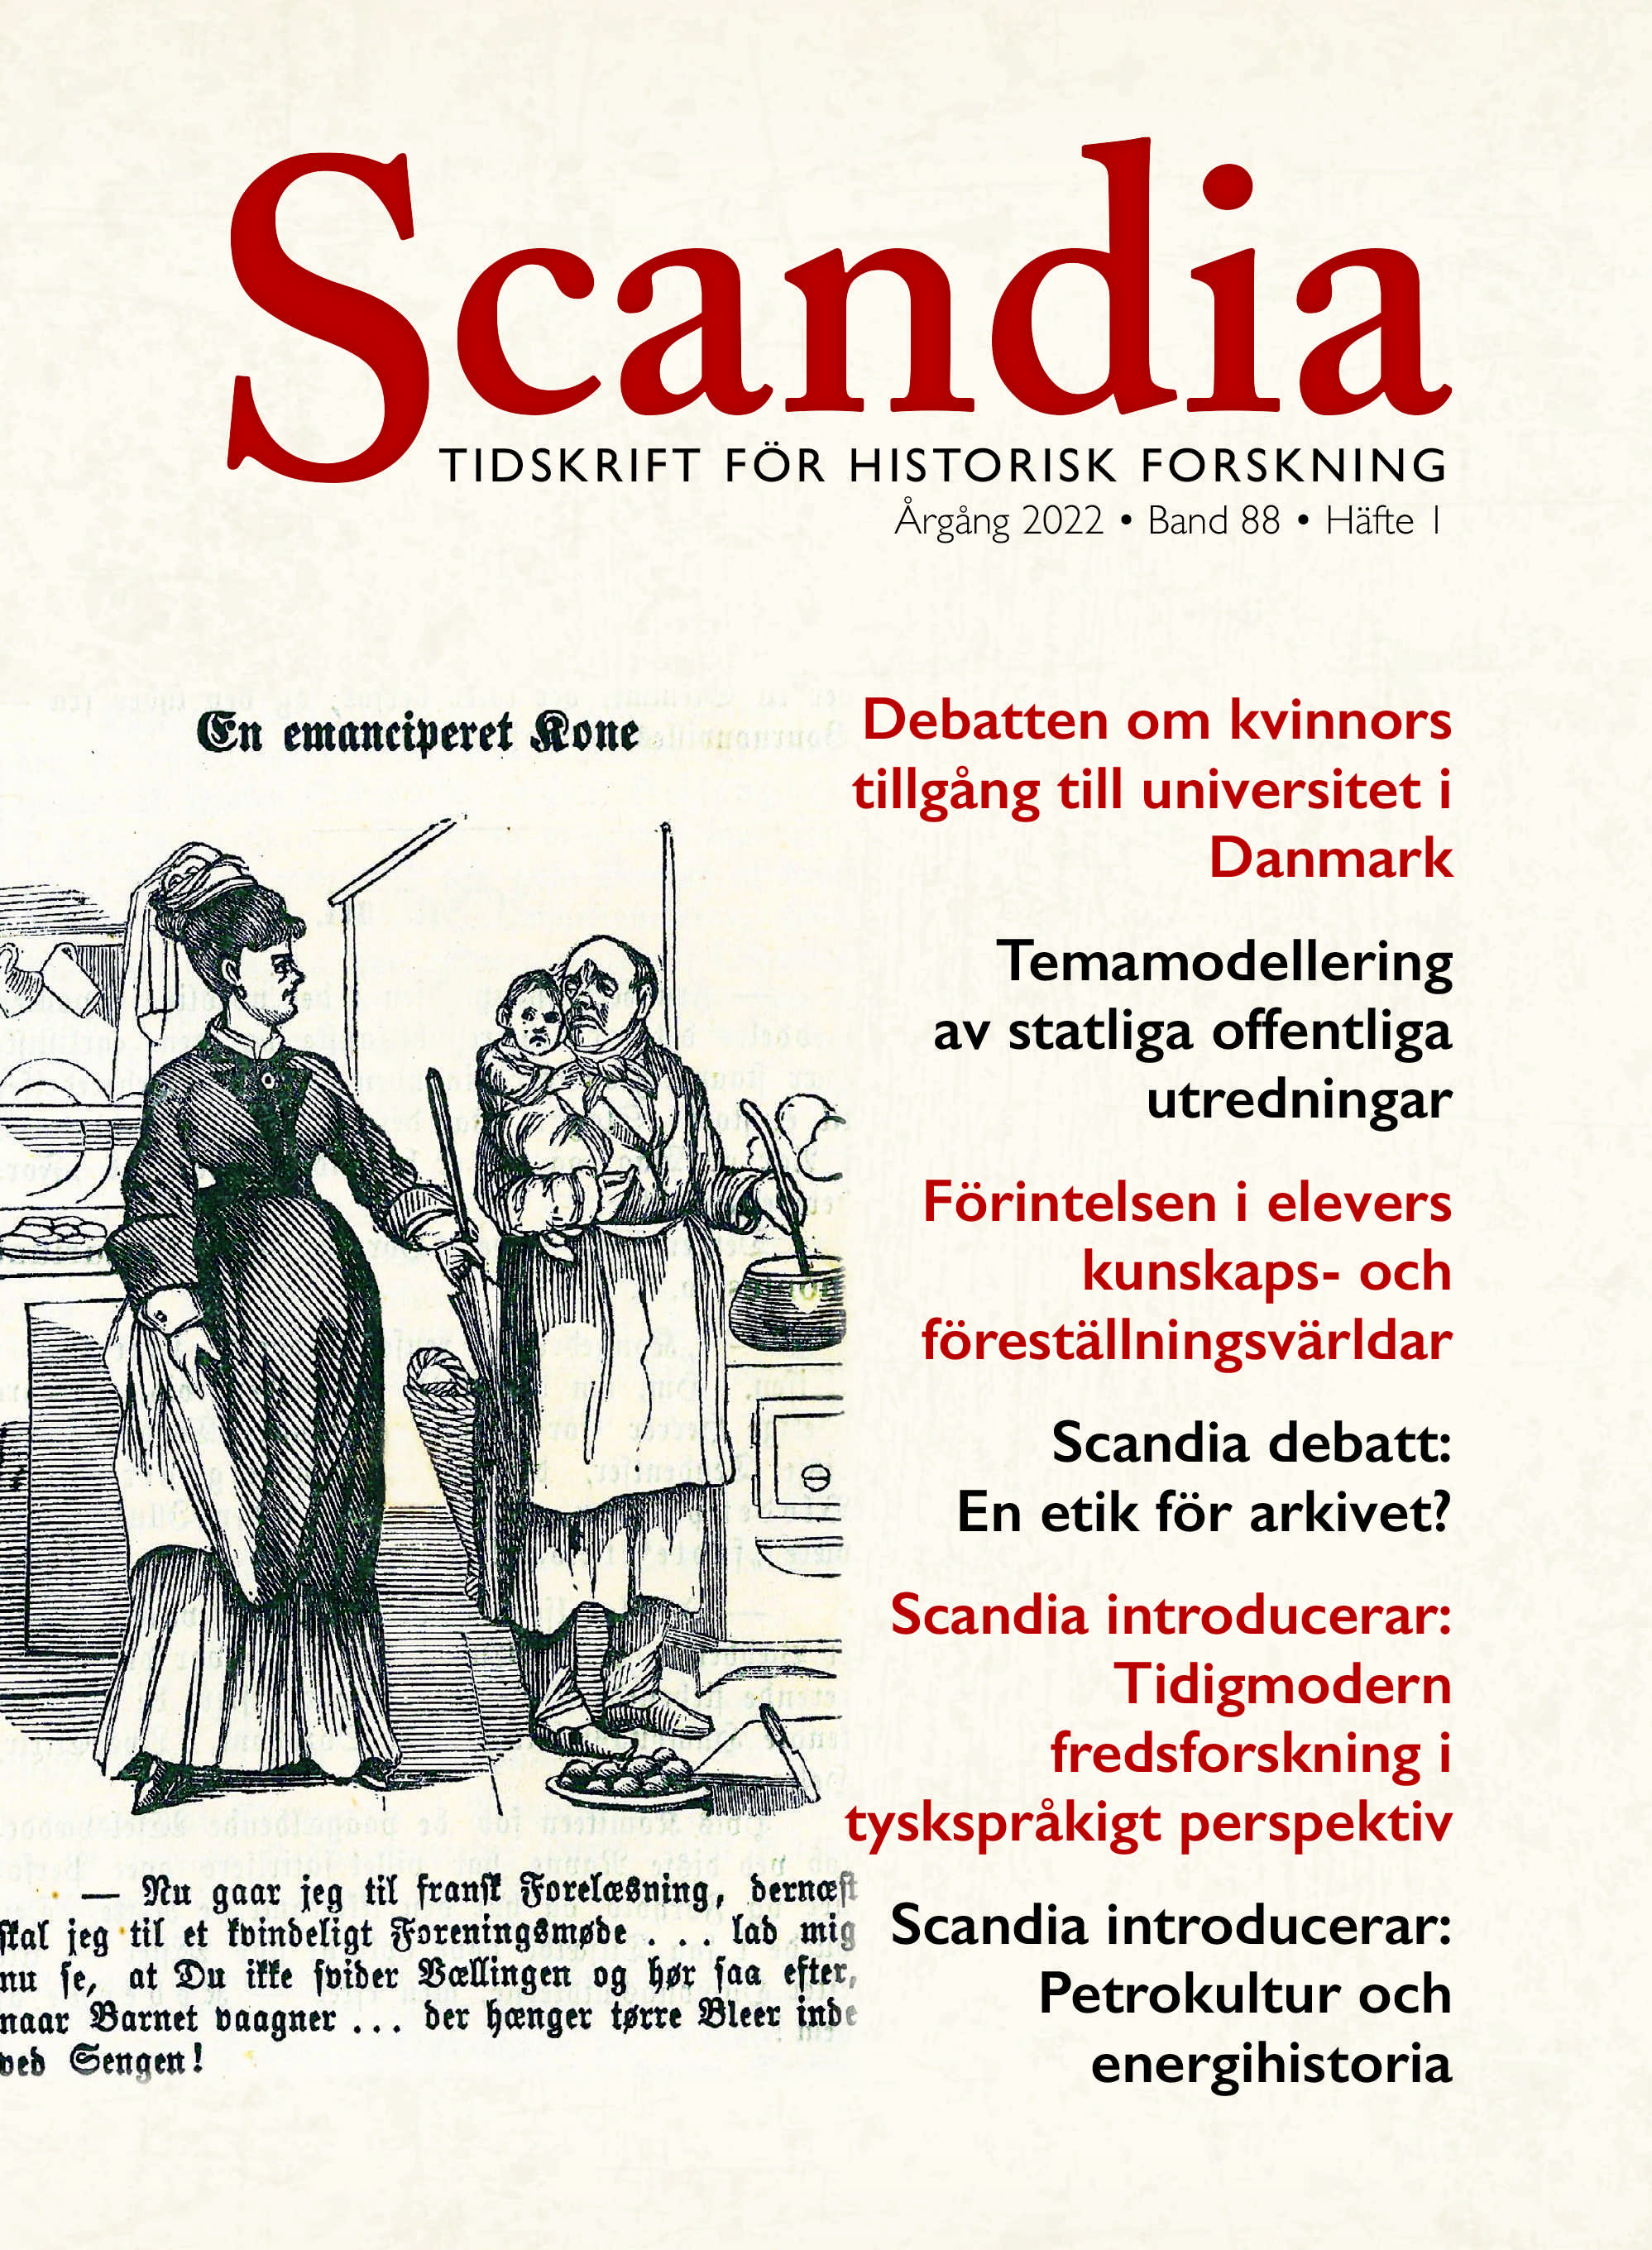 Omslaget till Scandia tidskrift för historisk forskning. En bild över en dansk politisk teckning om faran med emanciperade kvinnor.